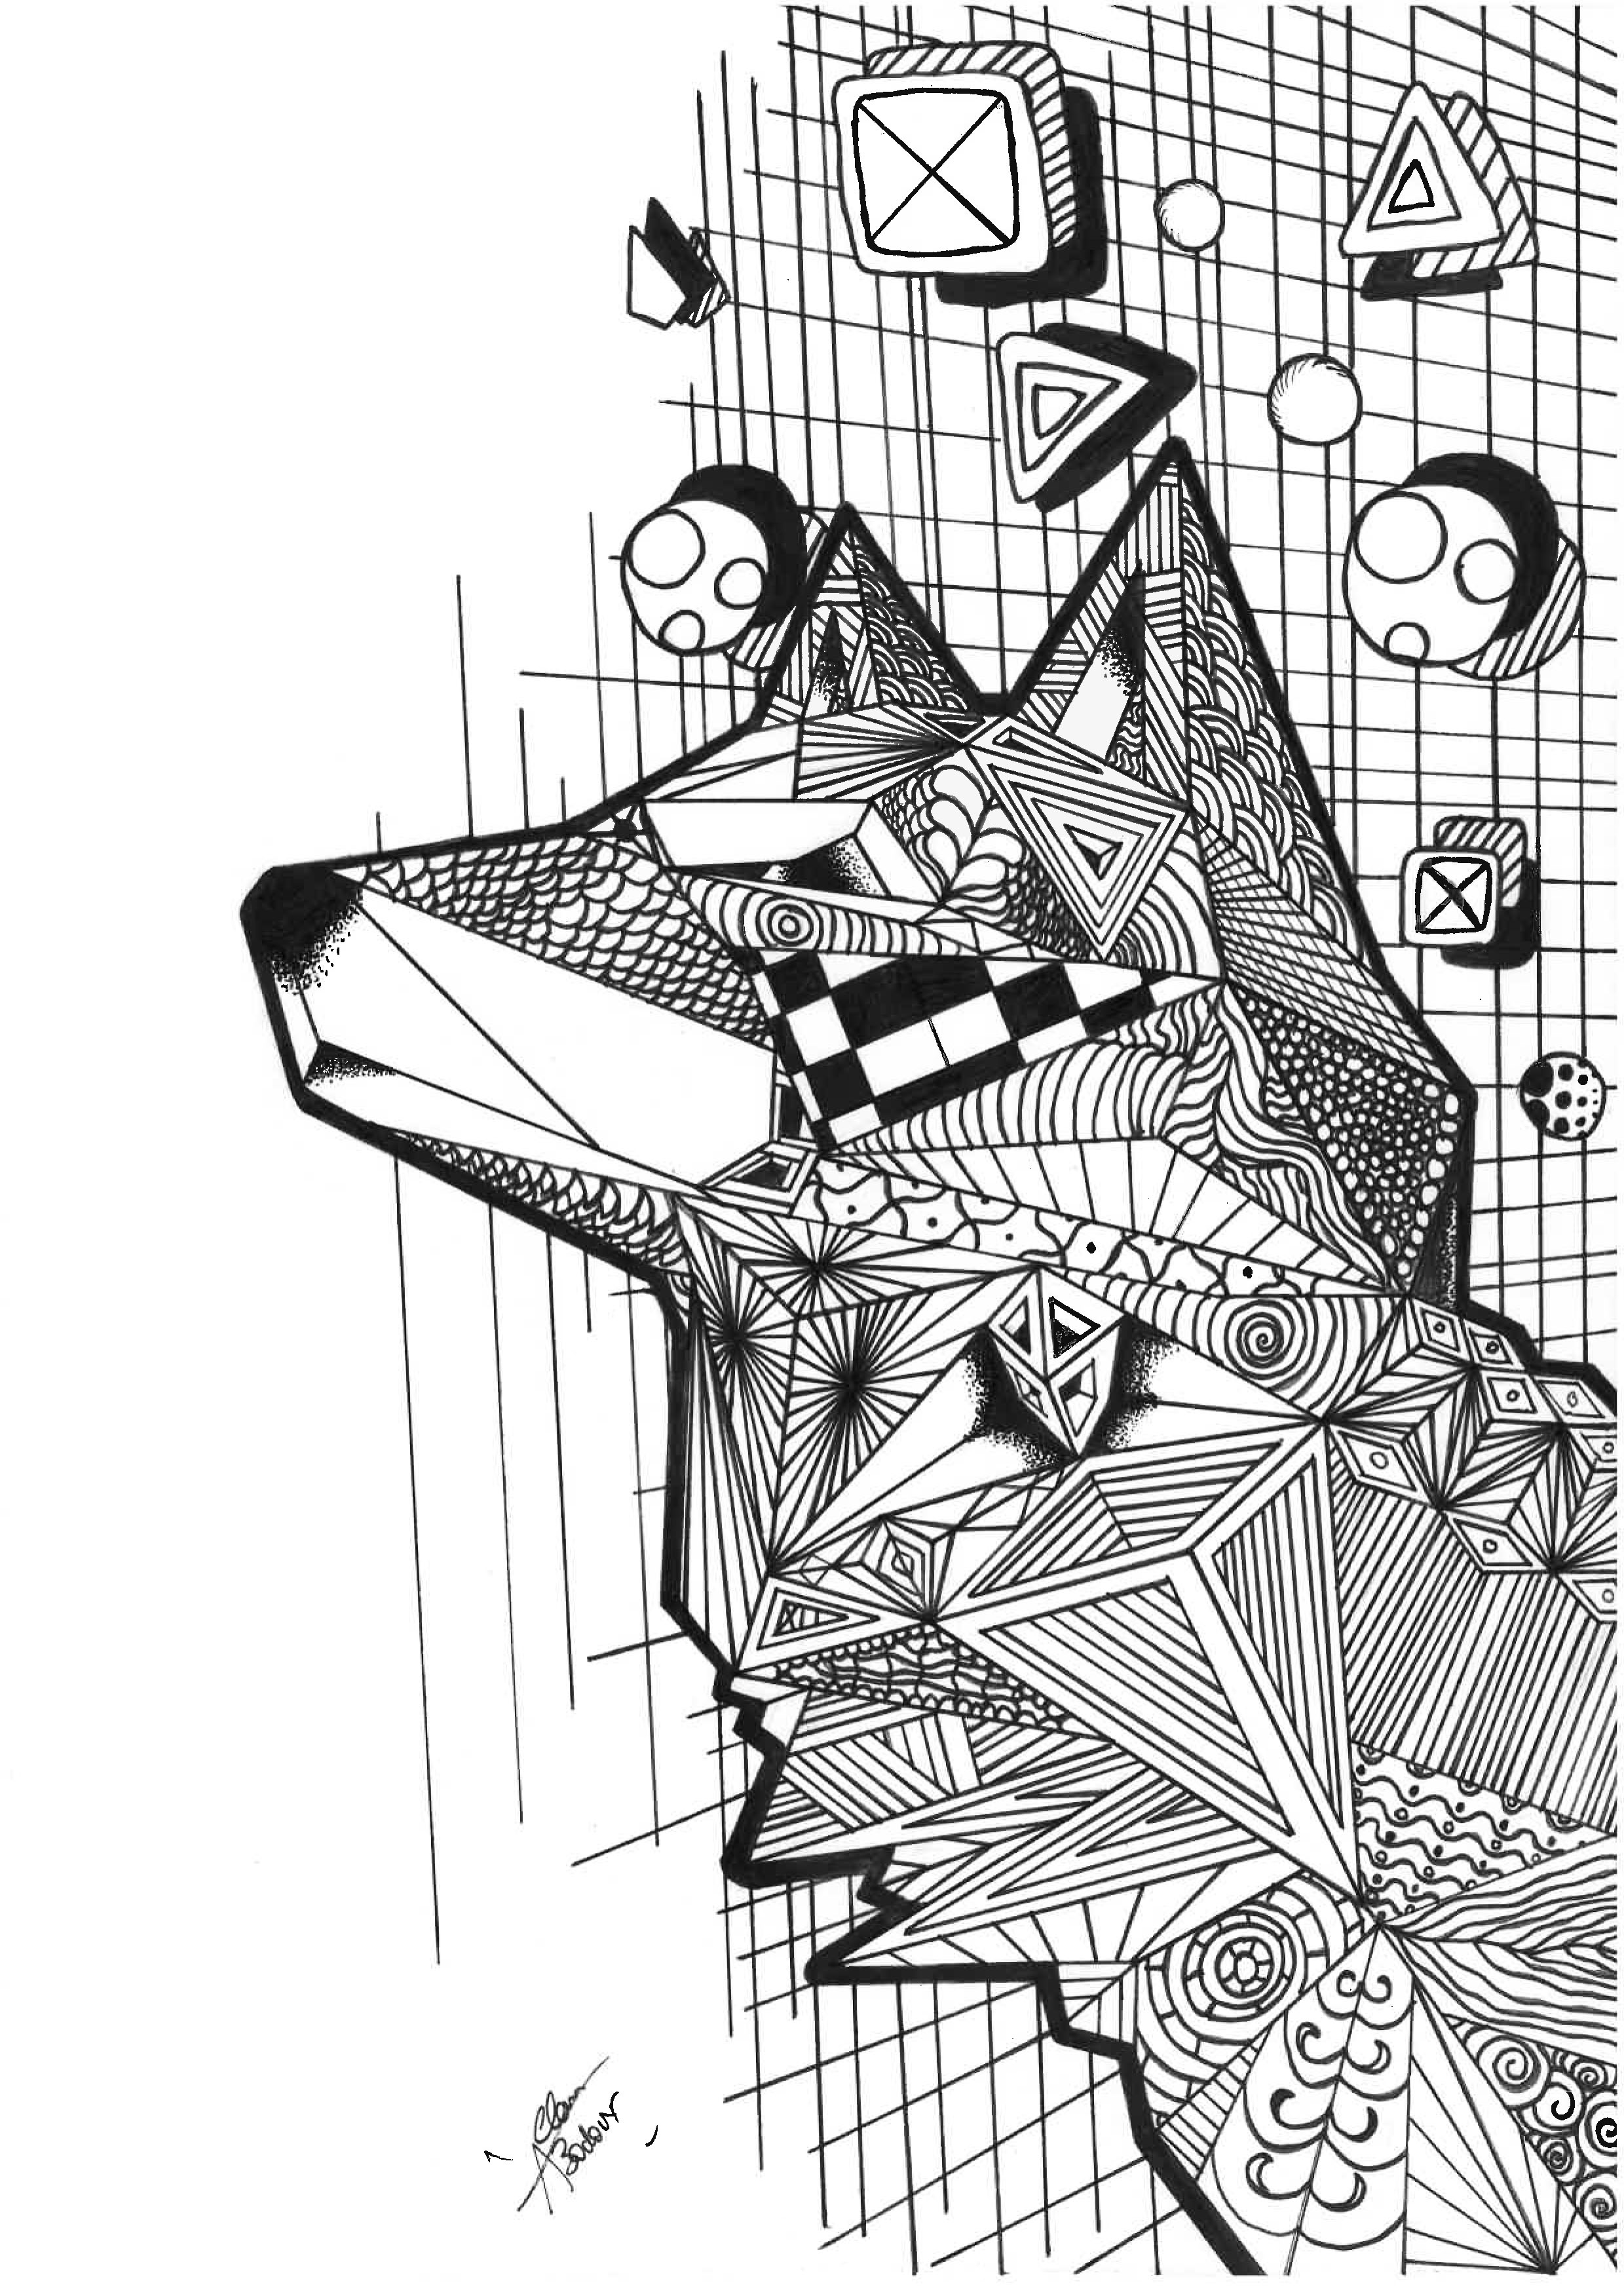 Colorização de um lobo em zentangle e cúbico. Com linhas cúbicas e padrões Zentangle, esta página para colorir é simultaneamente complexa e fascinante. O lobo representado é simultaneamente poderoso e misterioso, e a sua composição é simultaneamente desafiante e relaxante.